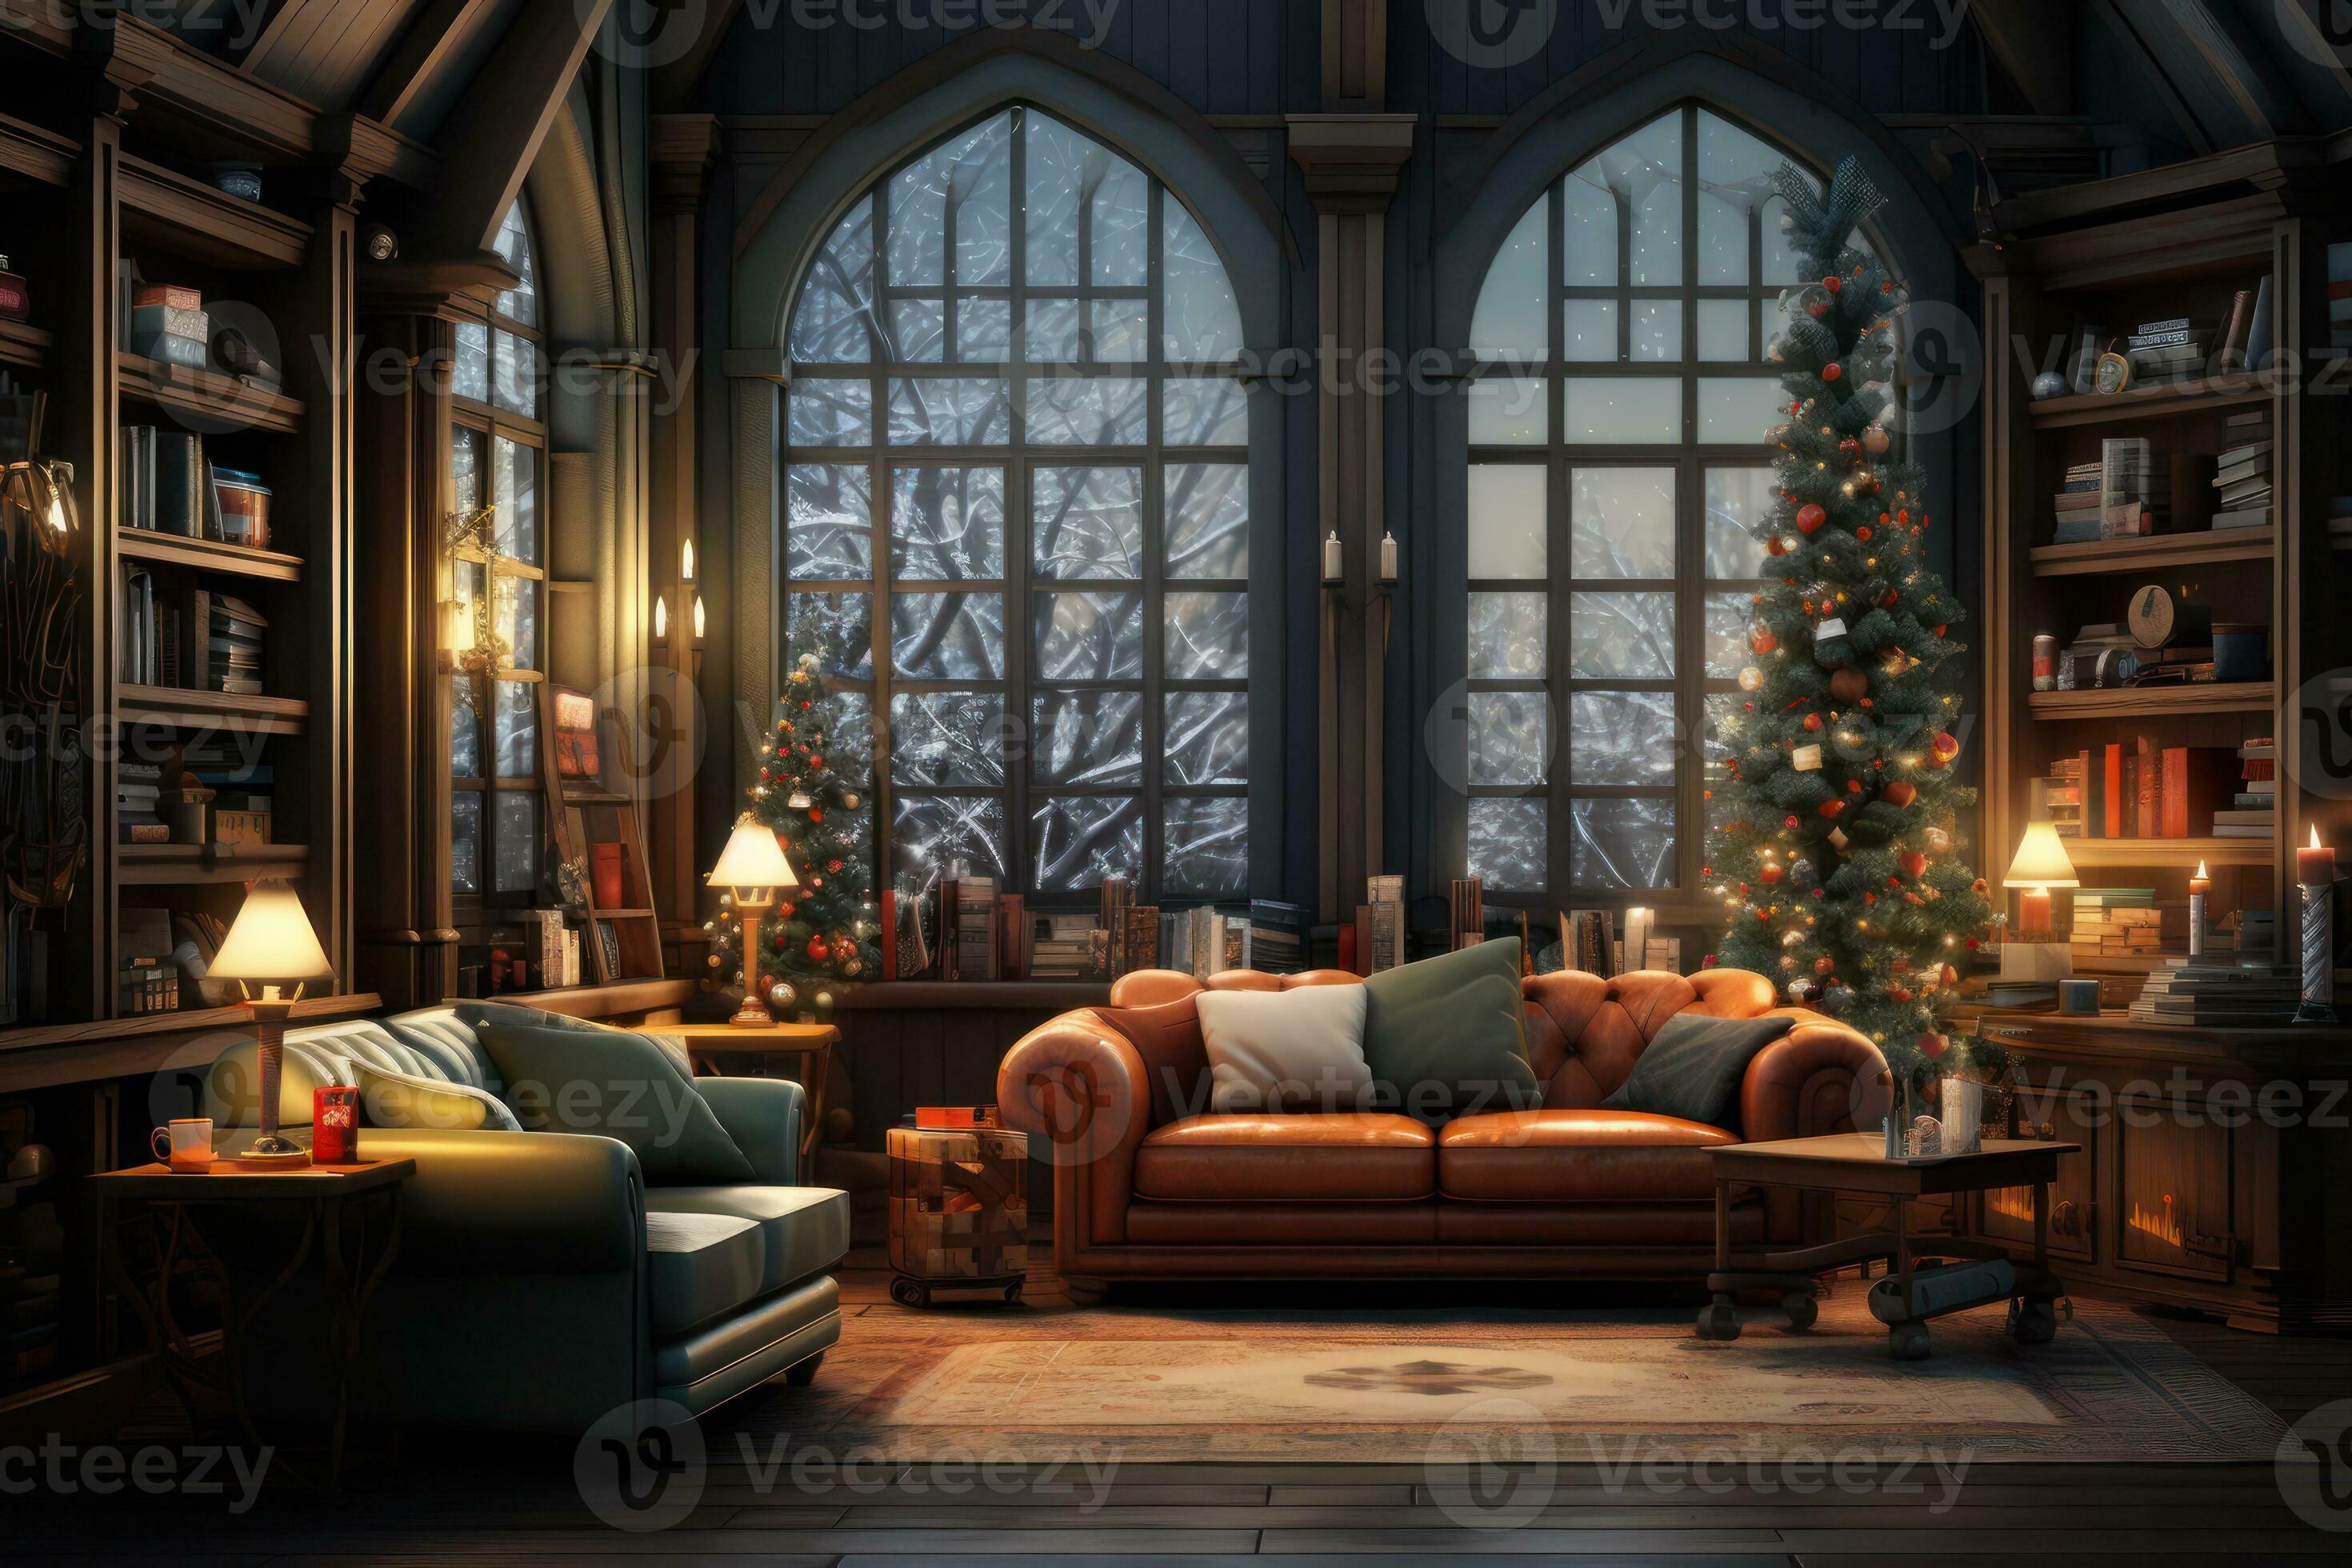 Hermoso interior de navidad con chimenea decorativa y abeto